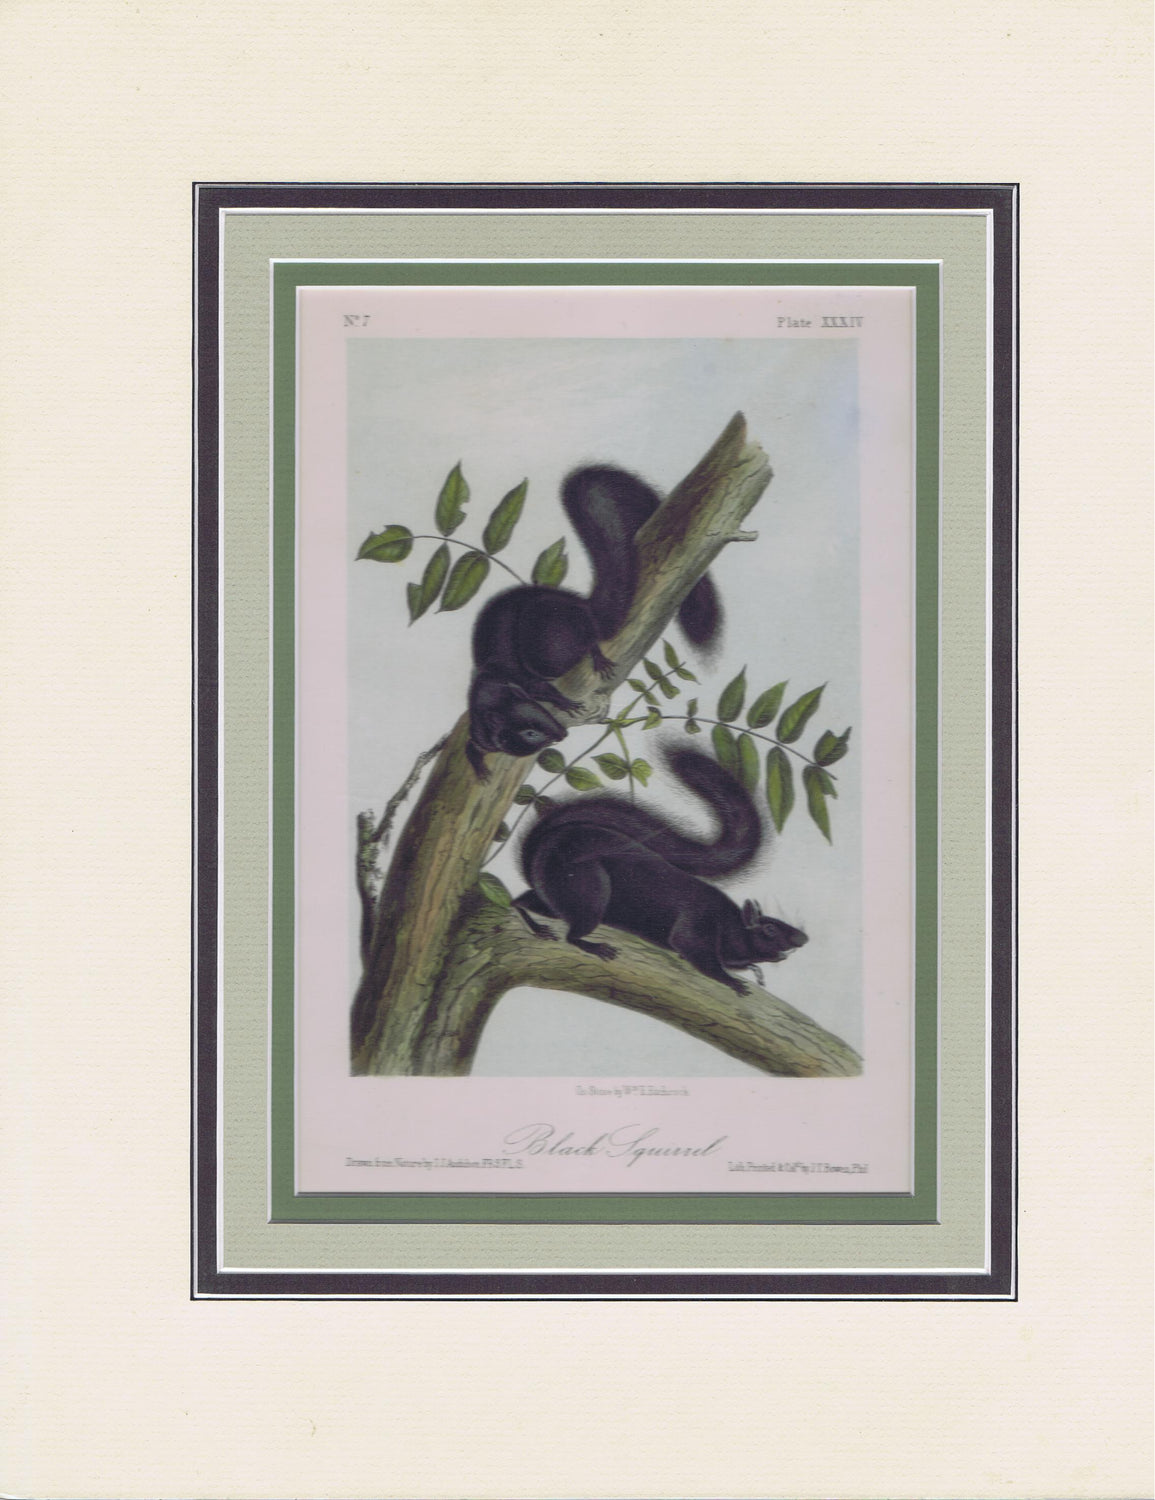 Original Audubon Octavo Quadruped Matted, Black Squirrel, plate 34